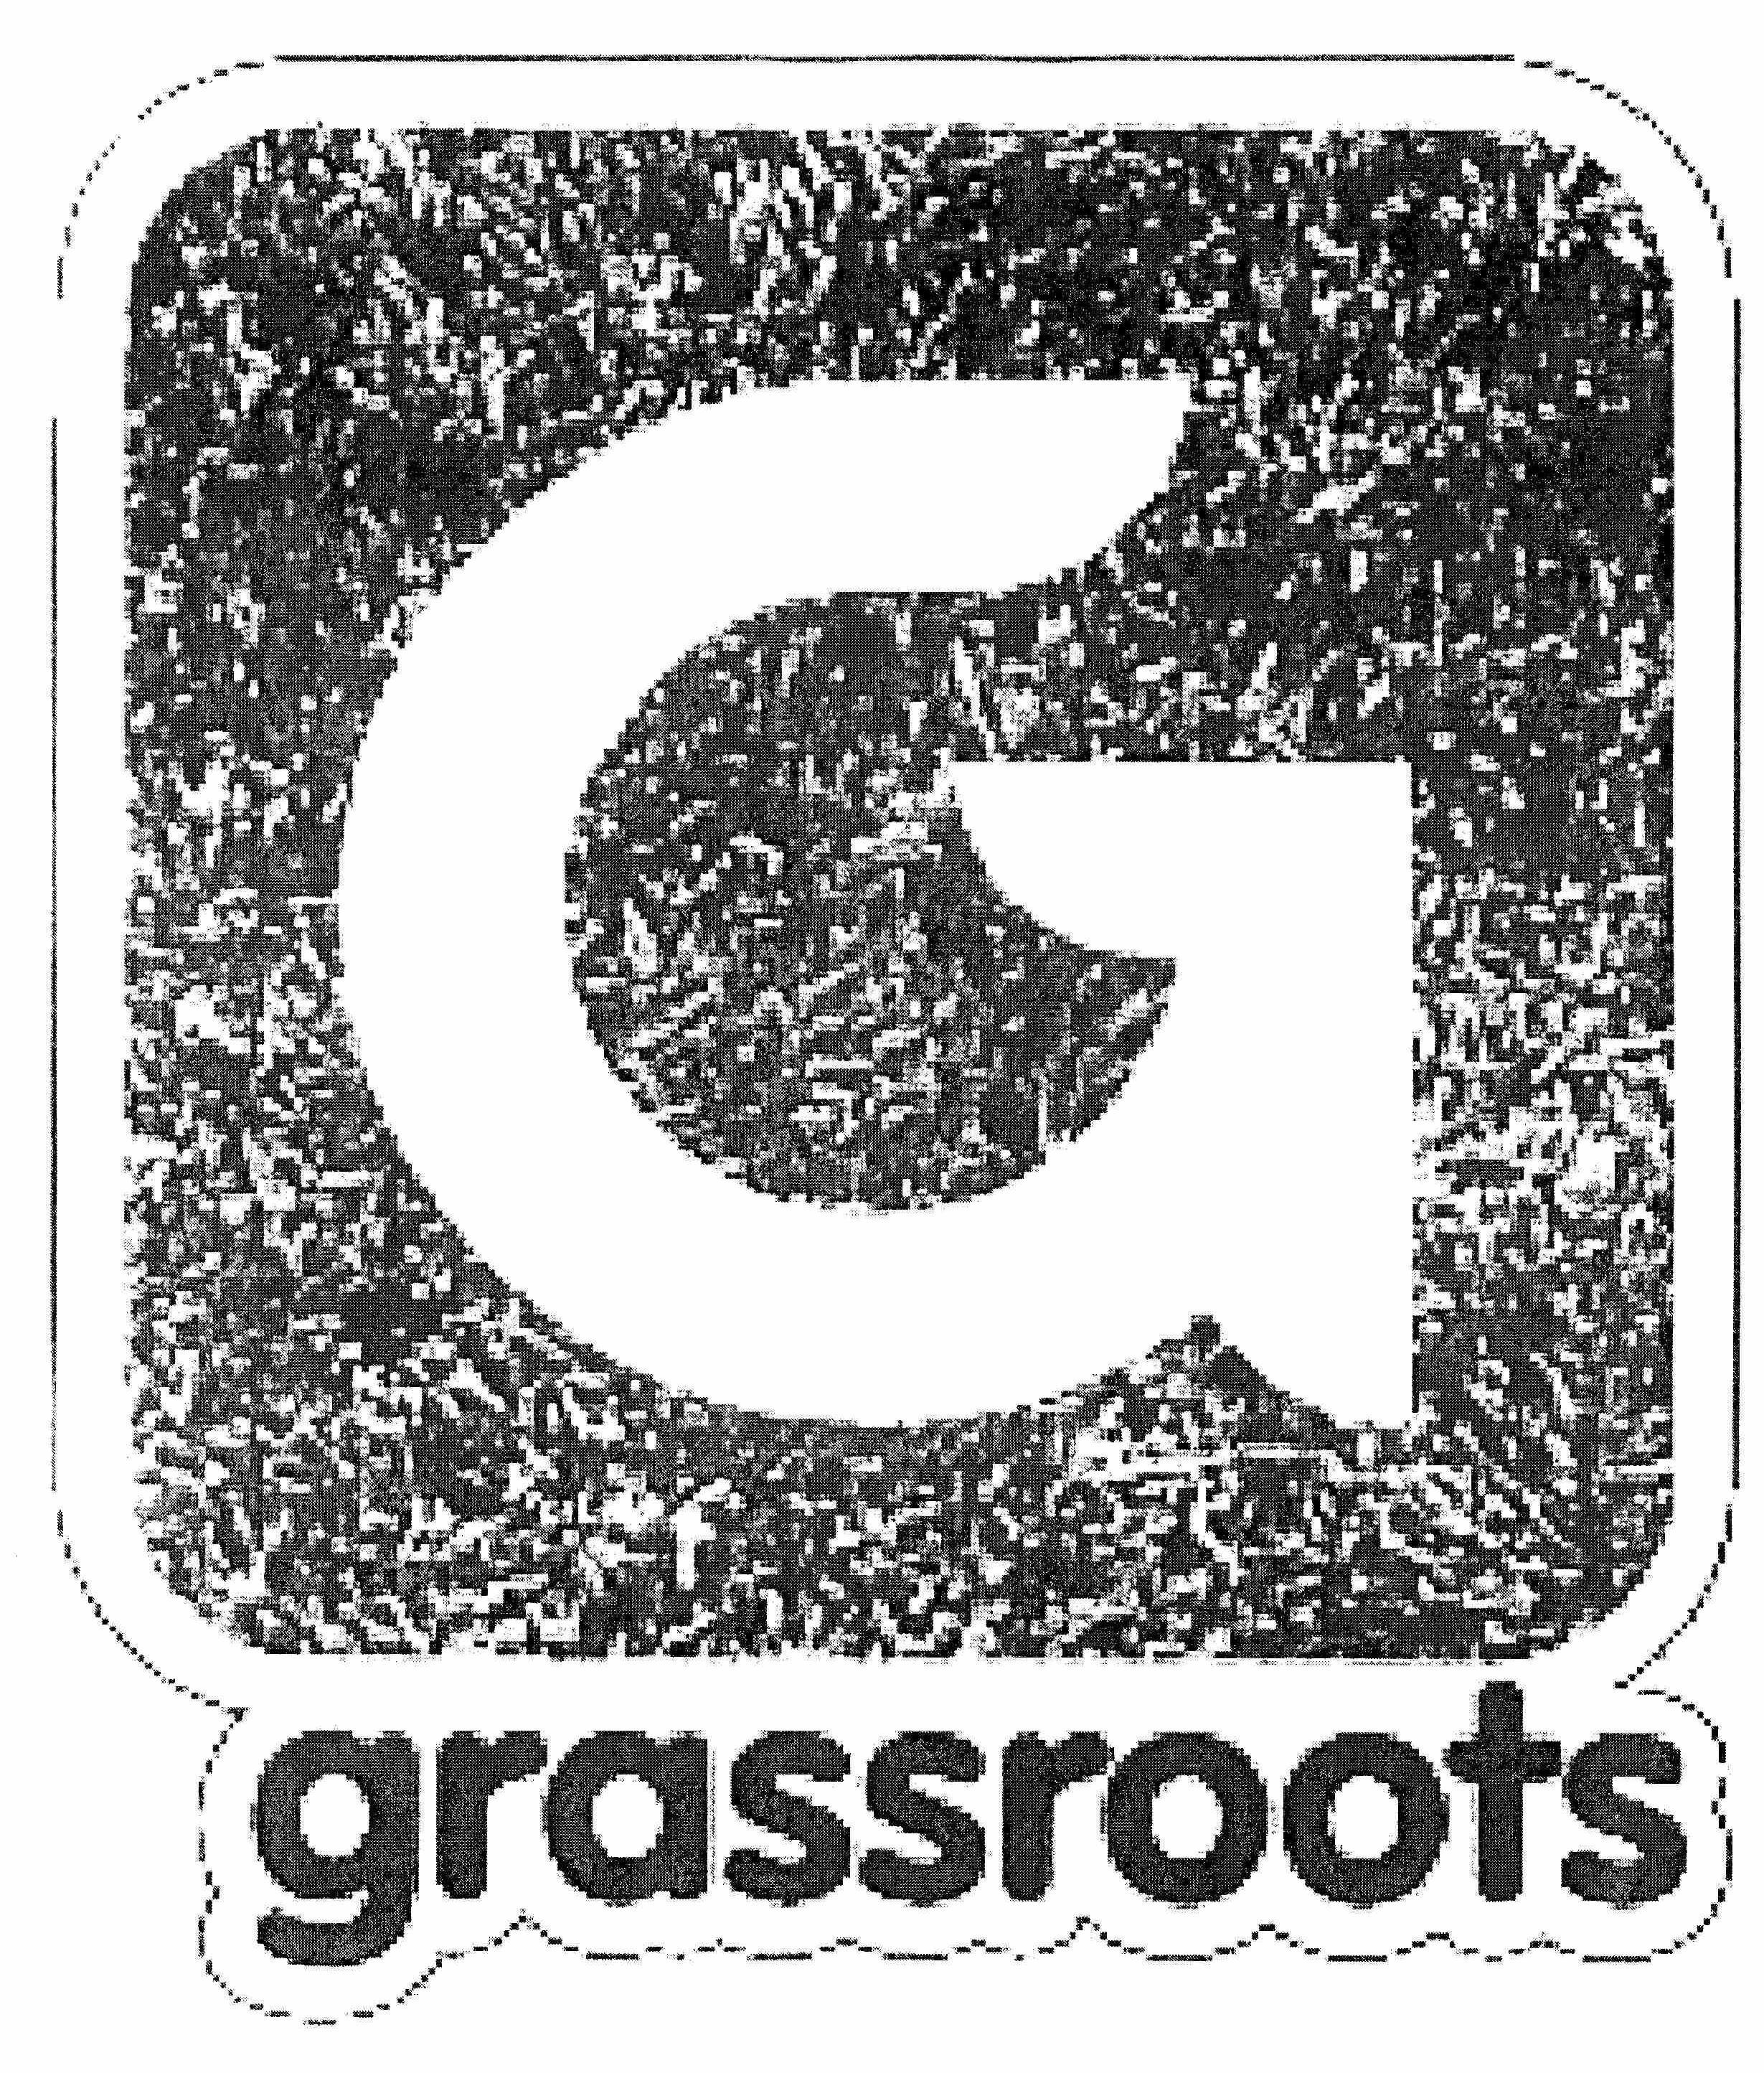  G GRASSROOTS